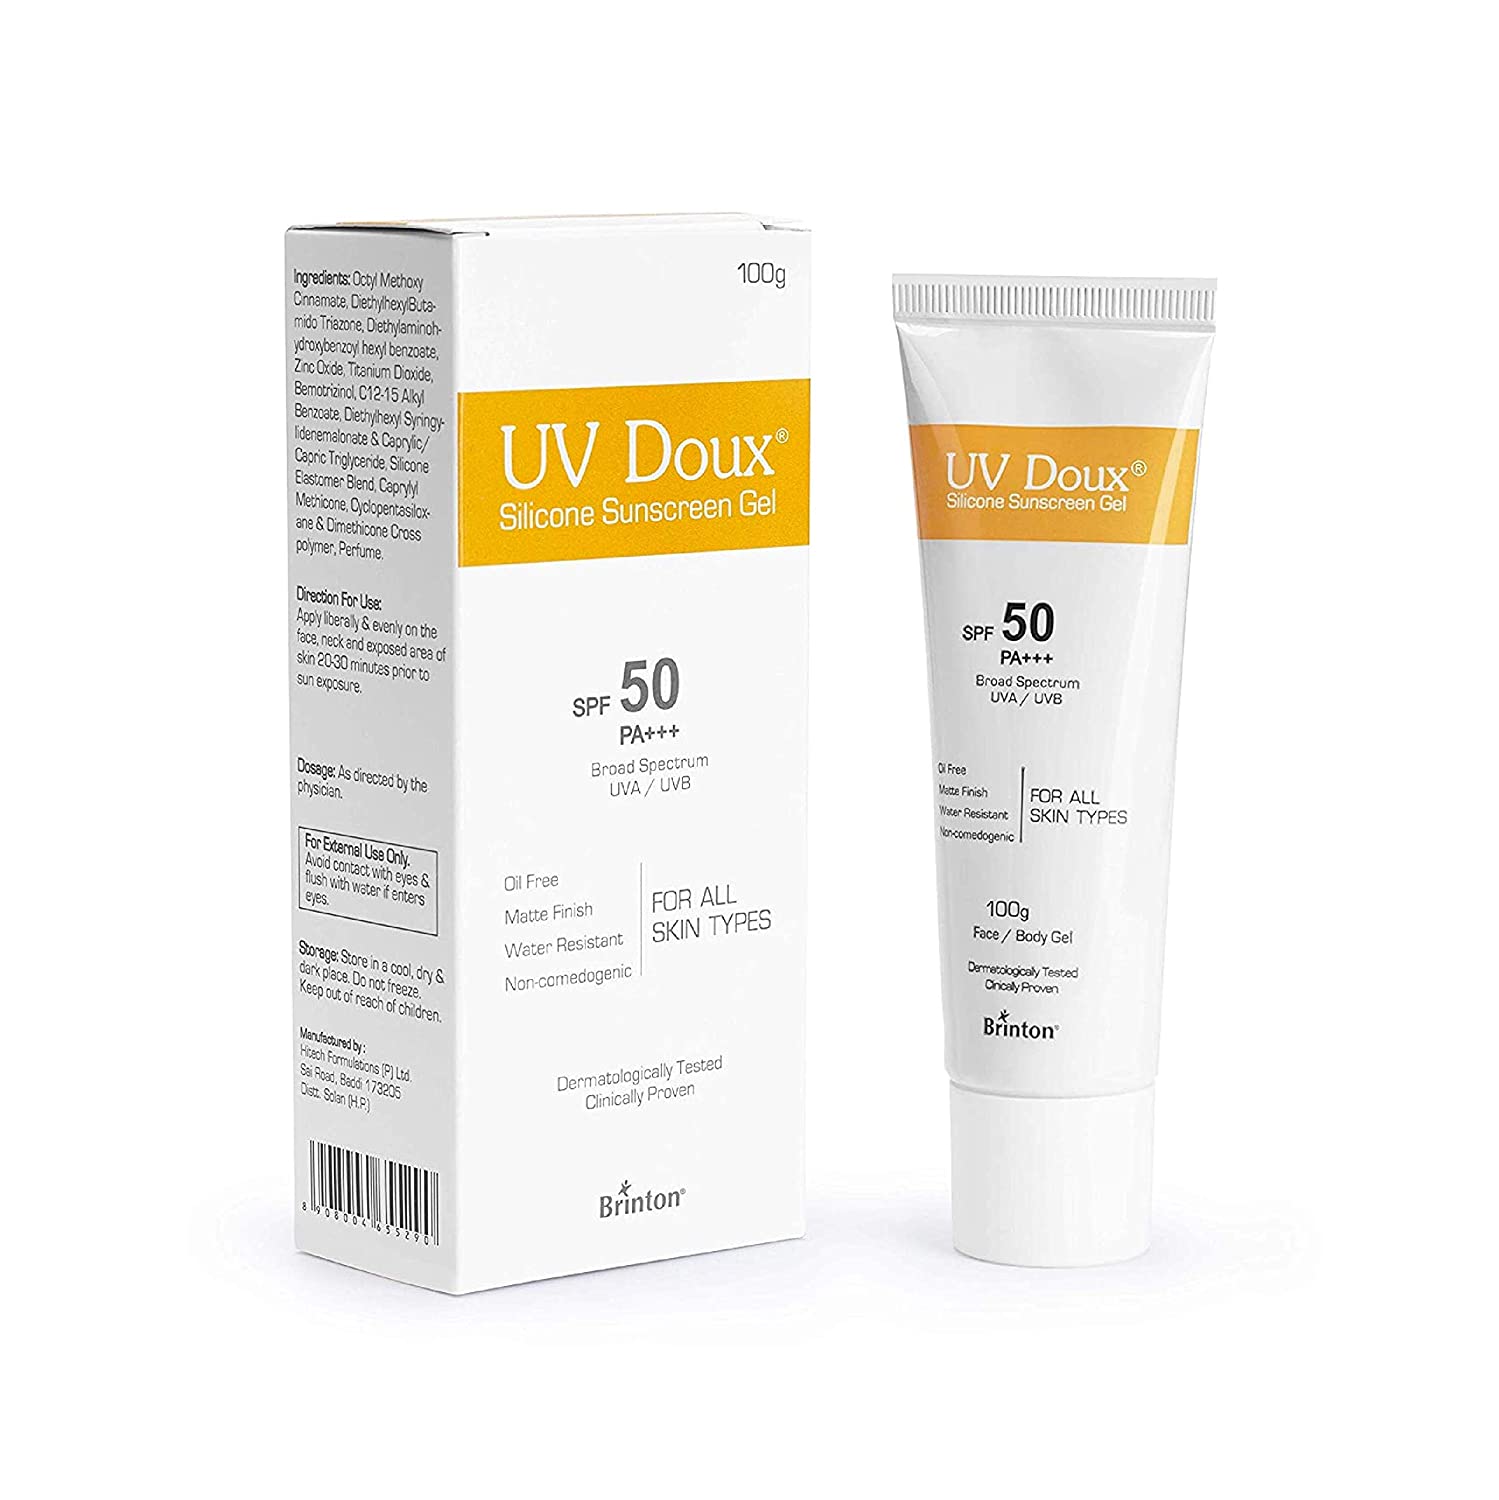 PositraRx: Your Local Online Pharmacy: UV DOUX SUNSCRREEN SPF 50 GEL 100 GM